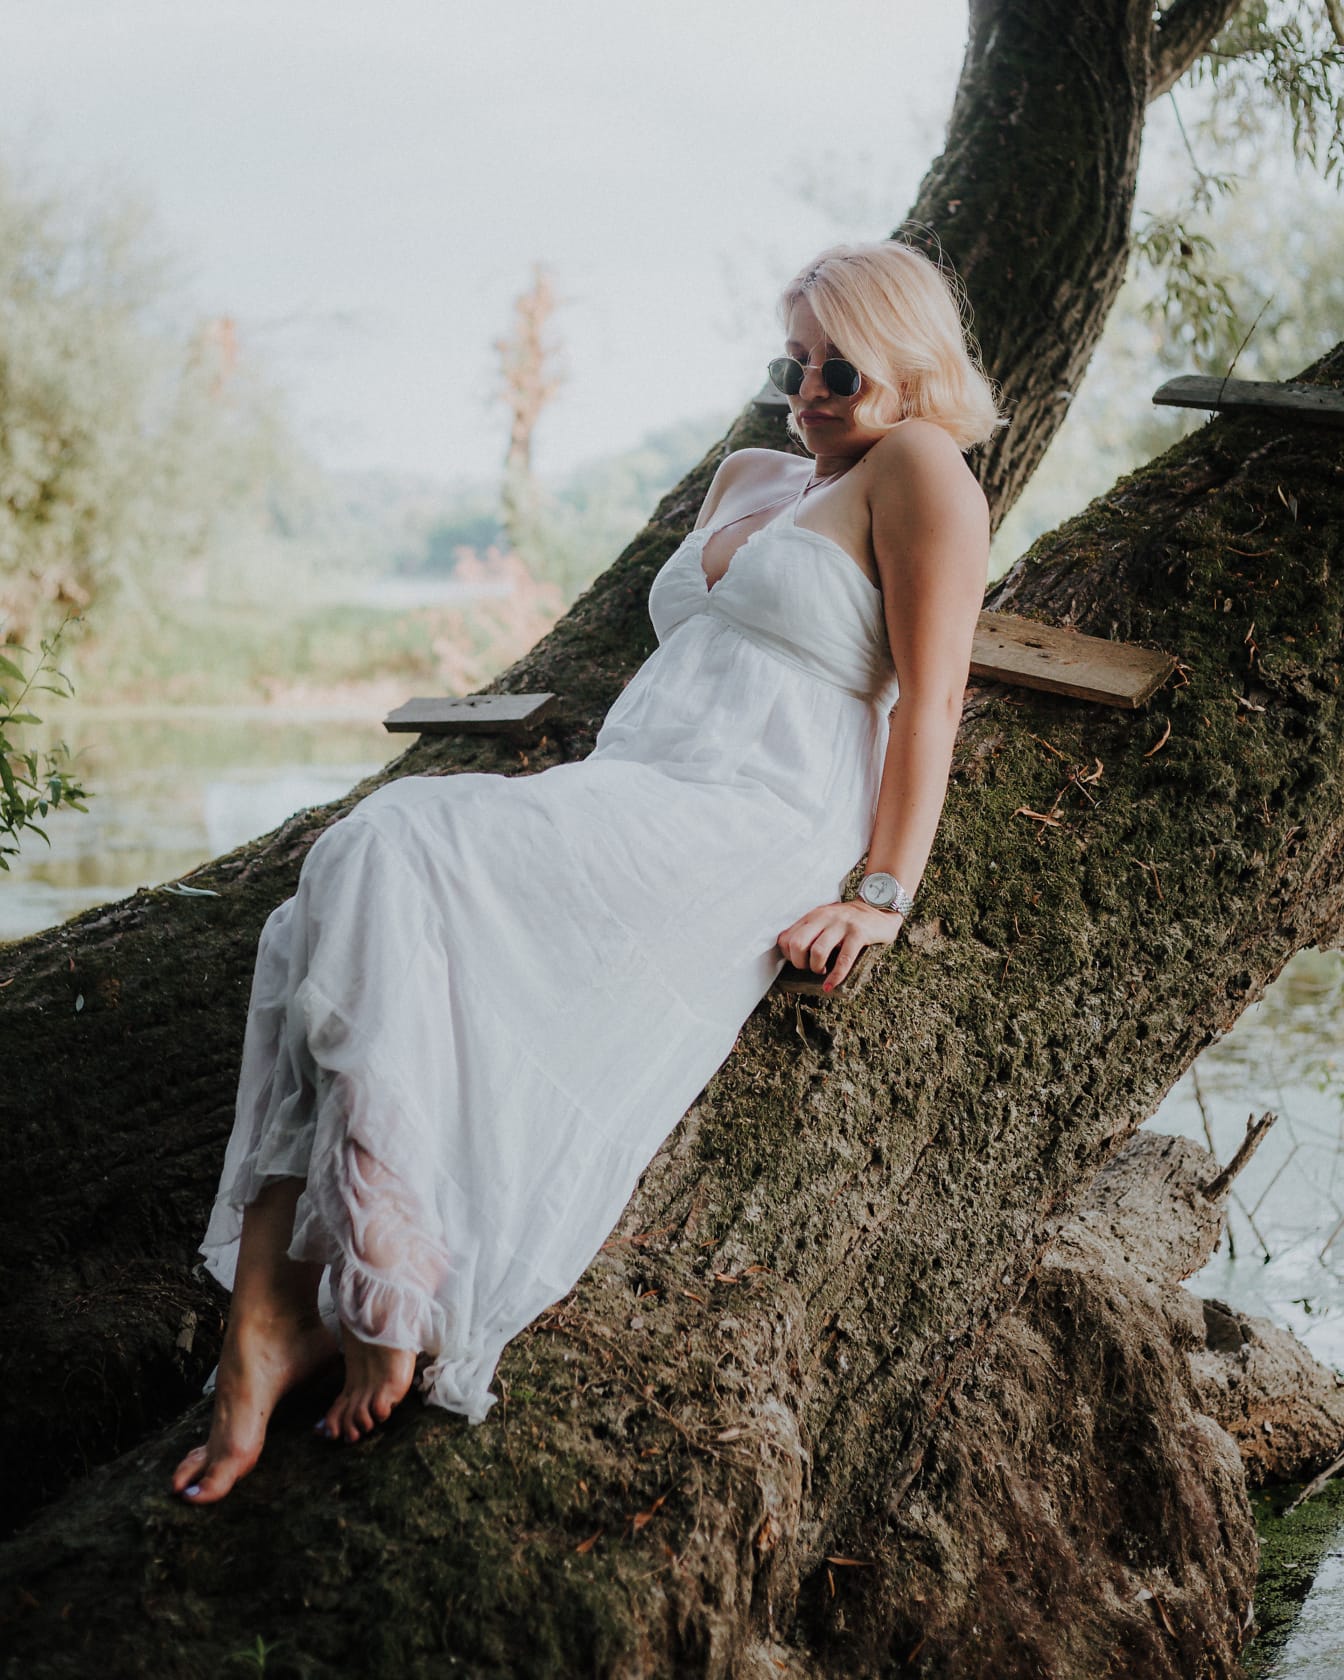 Linda mulher sedutora descalça em um vestido branco deitado em uma árvore